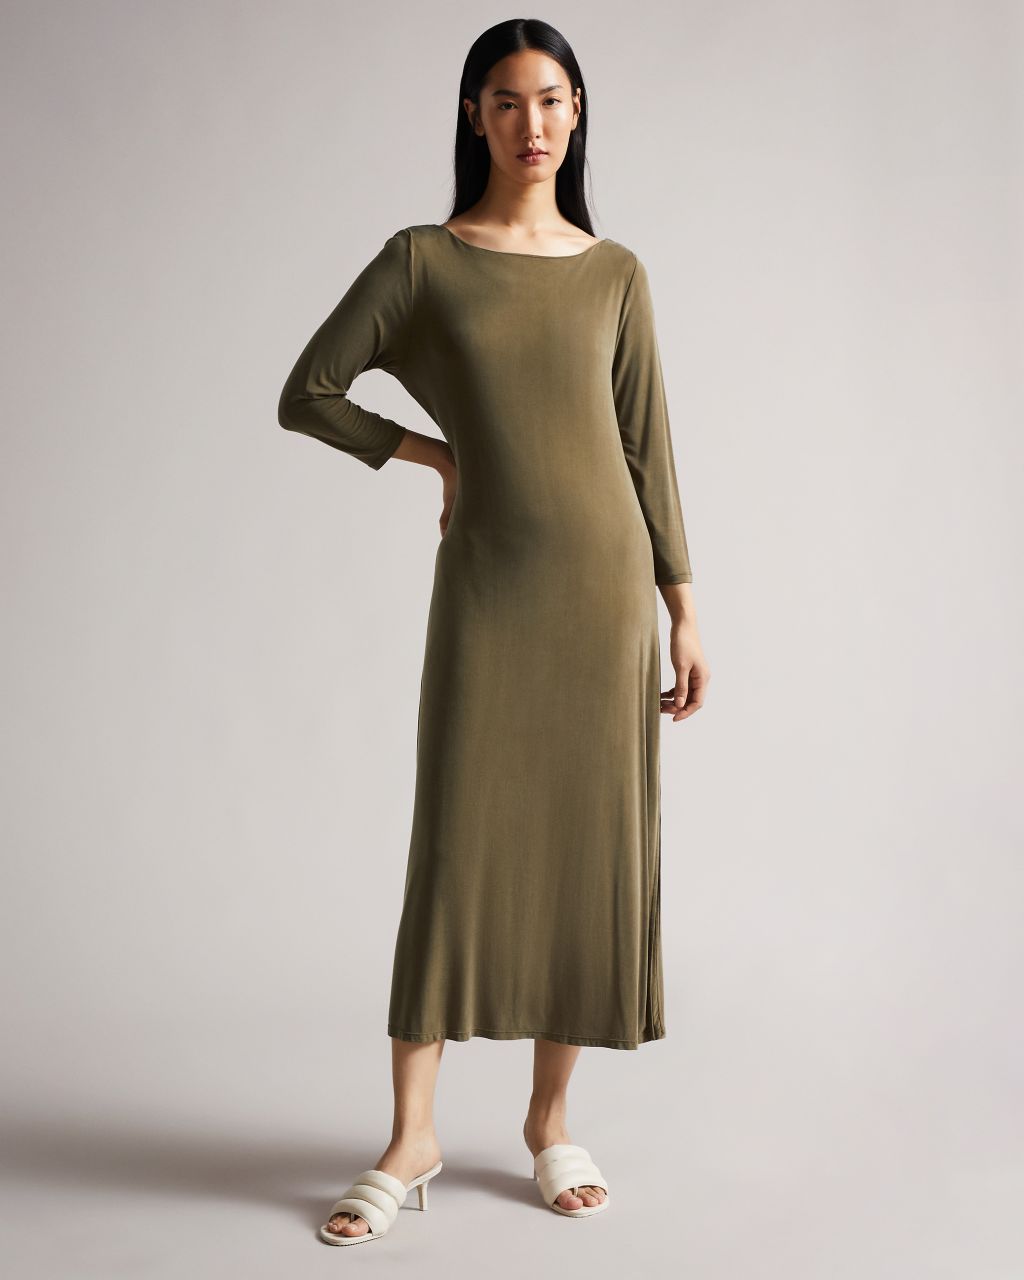 Ted Baker Women's Twist Back Jersey Dress in Dark Green, Neivaeh